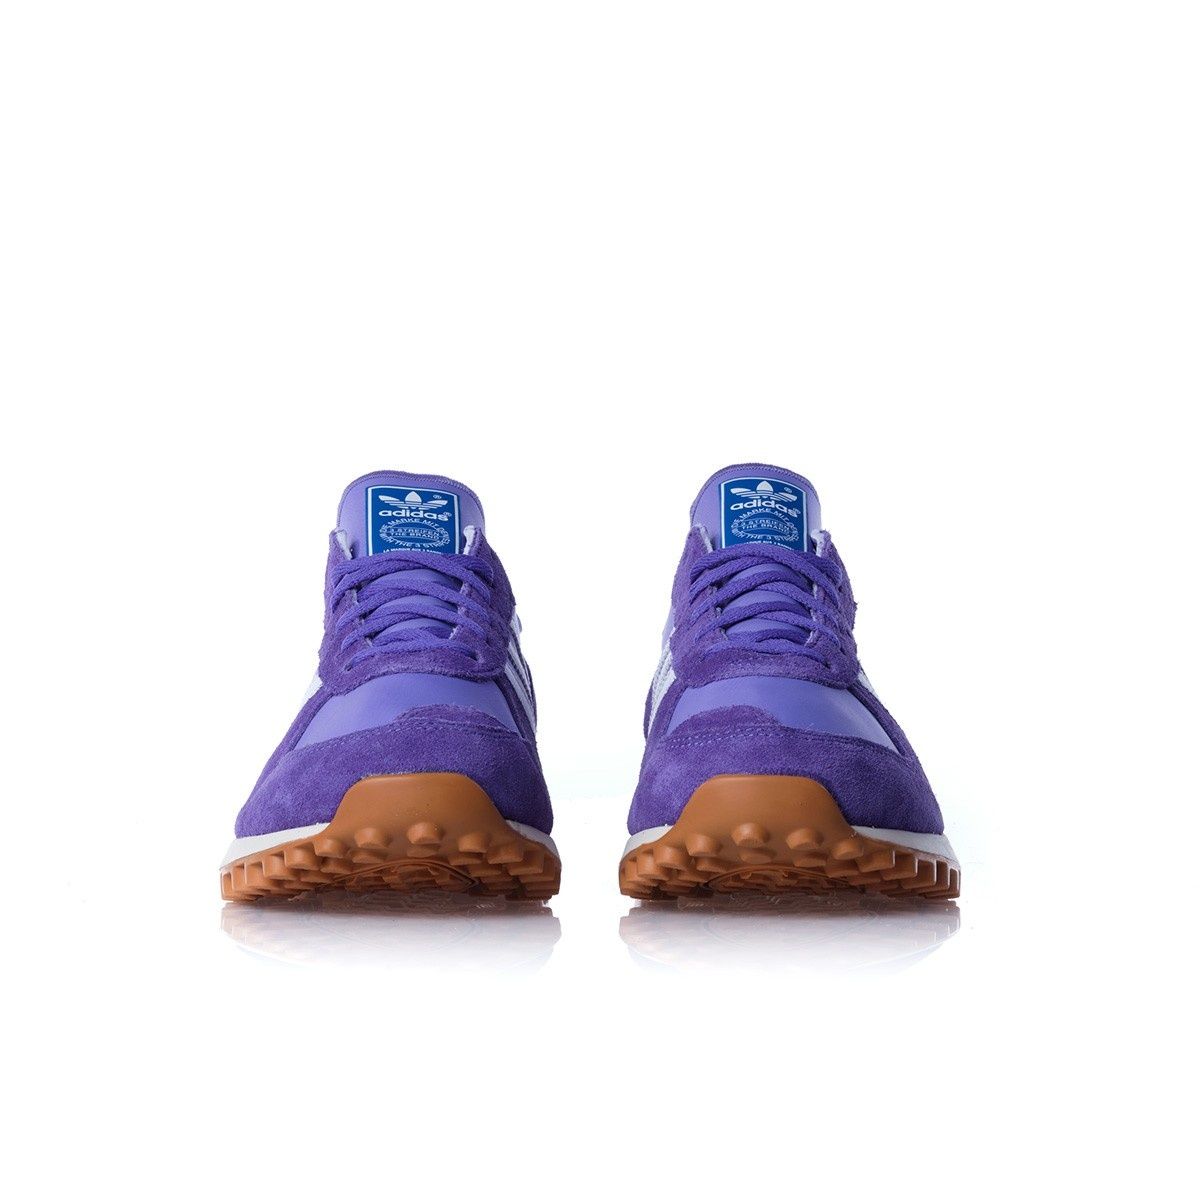 Adidasi ADIDAS TRX Vintage Purple